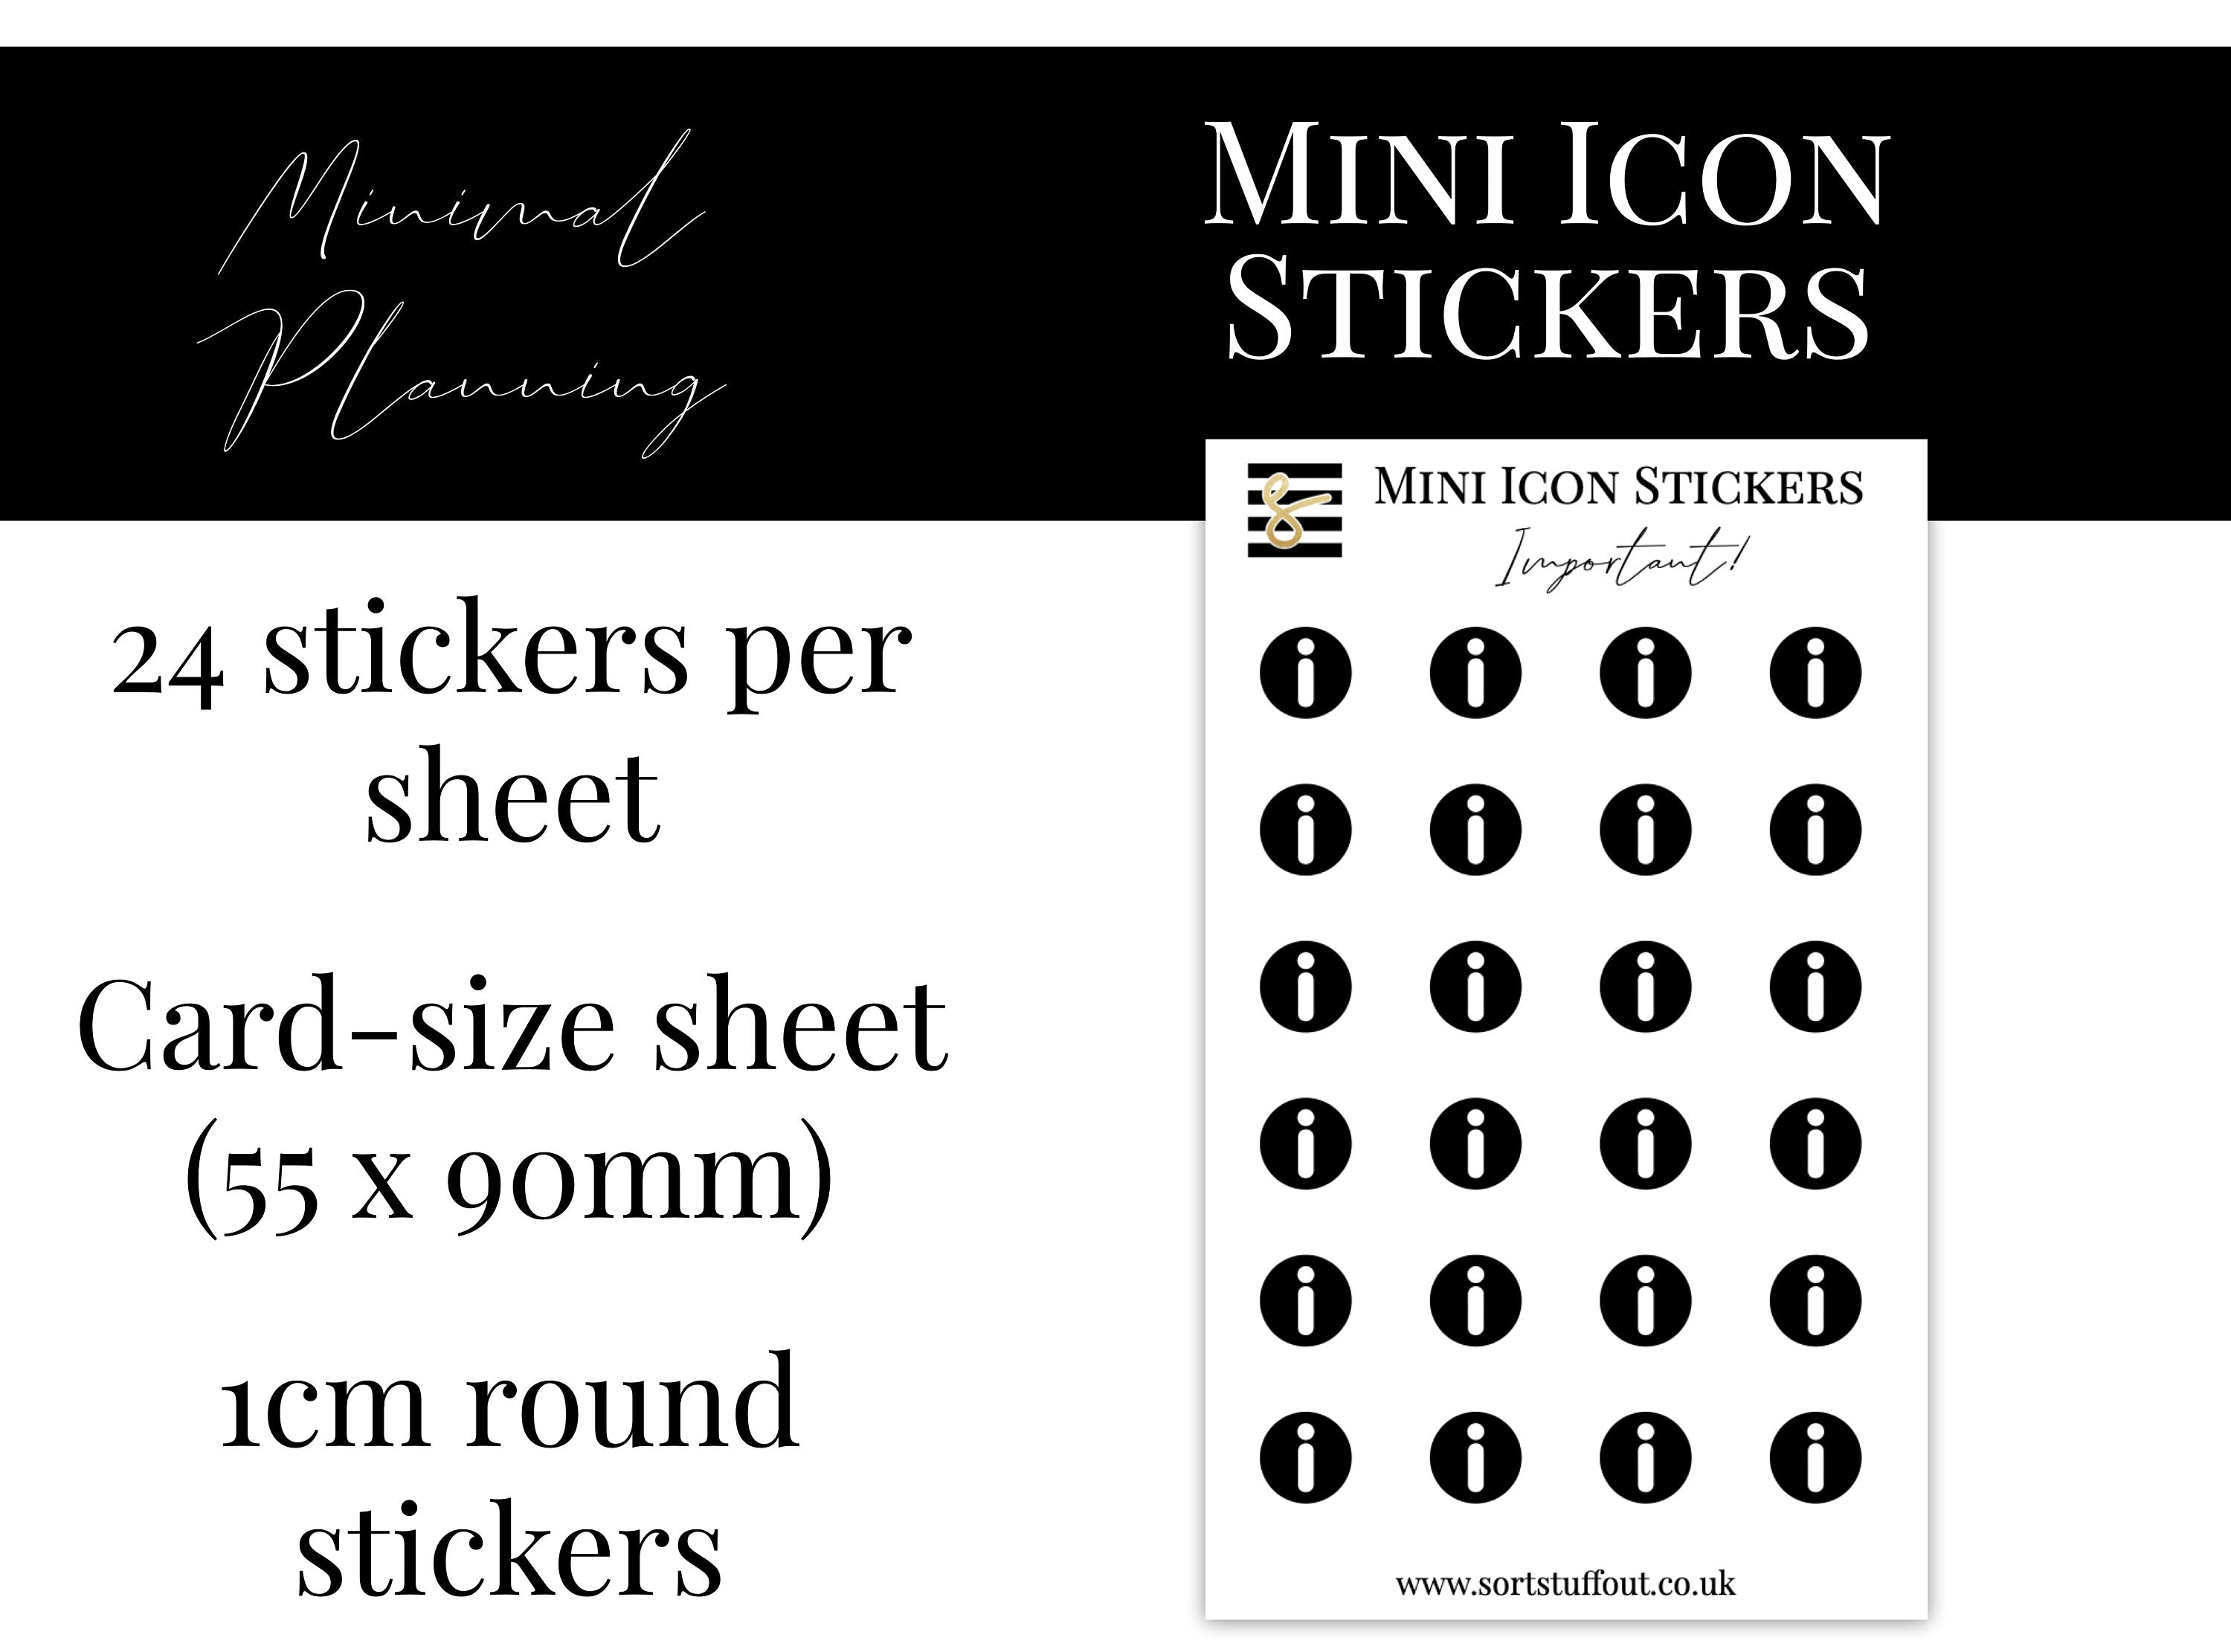 Mini Icon Stickers - Important